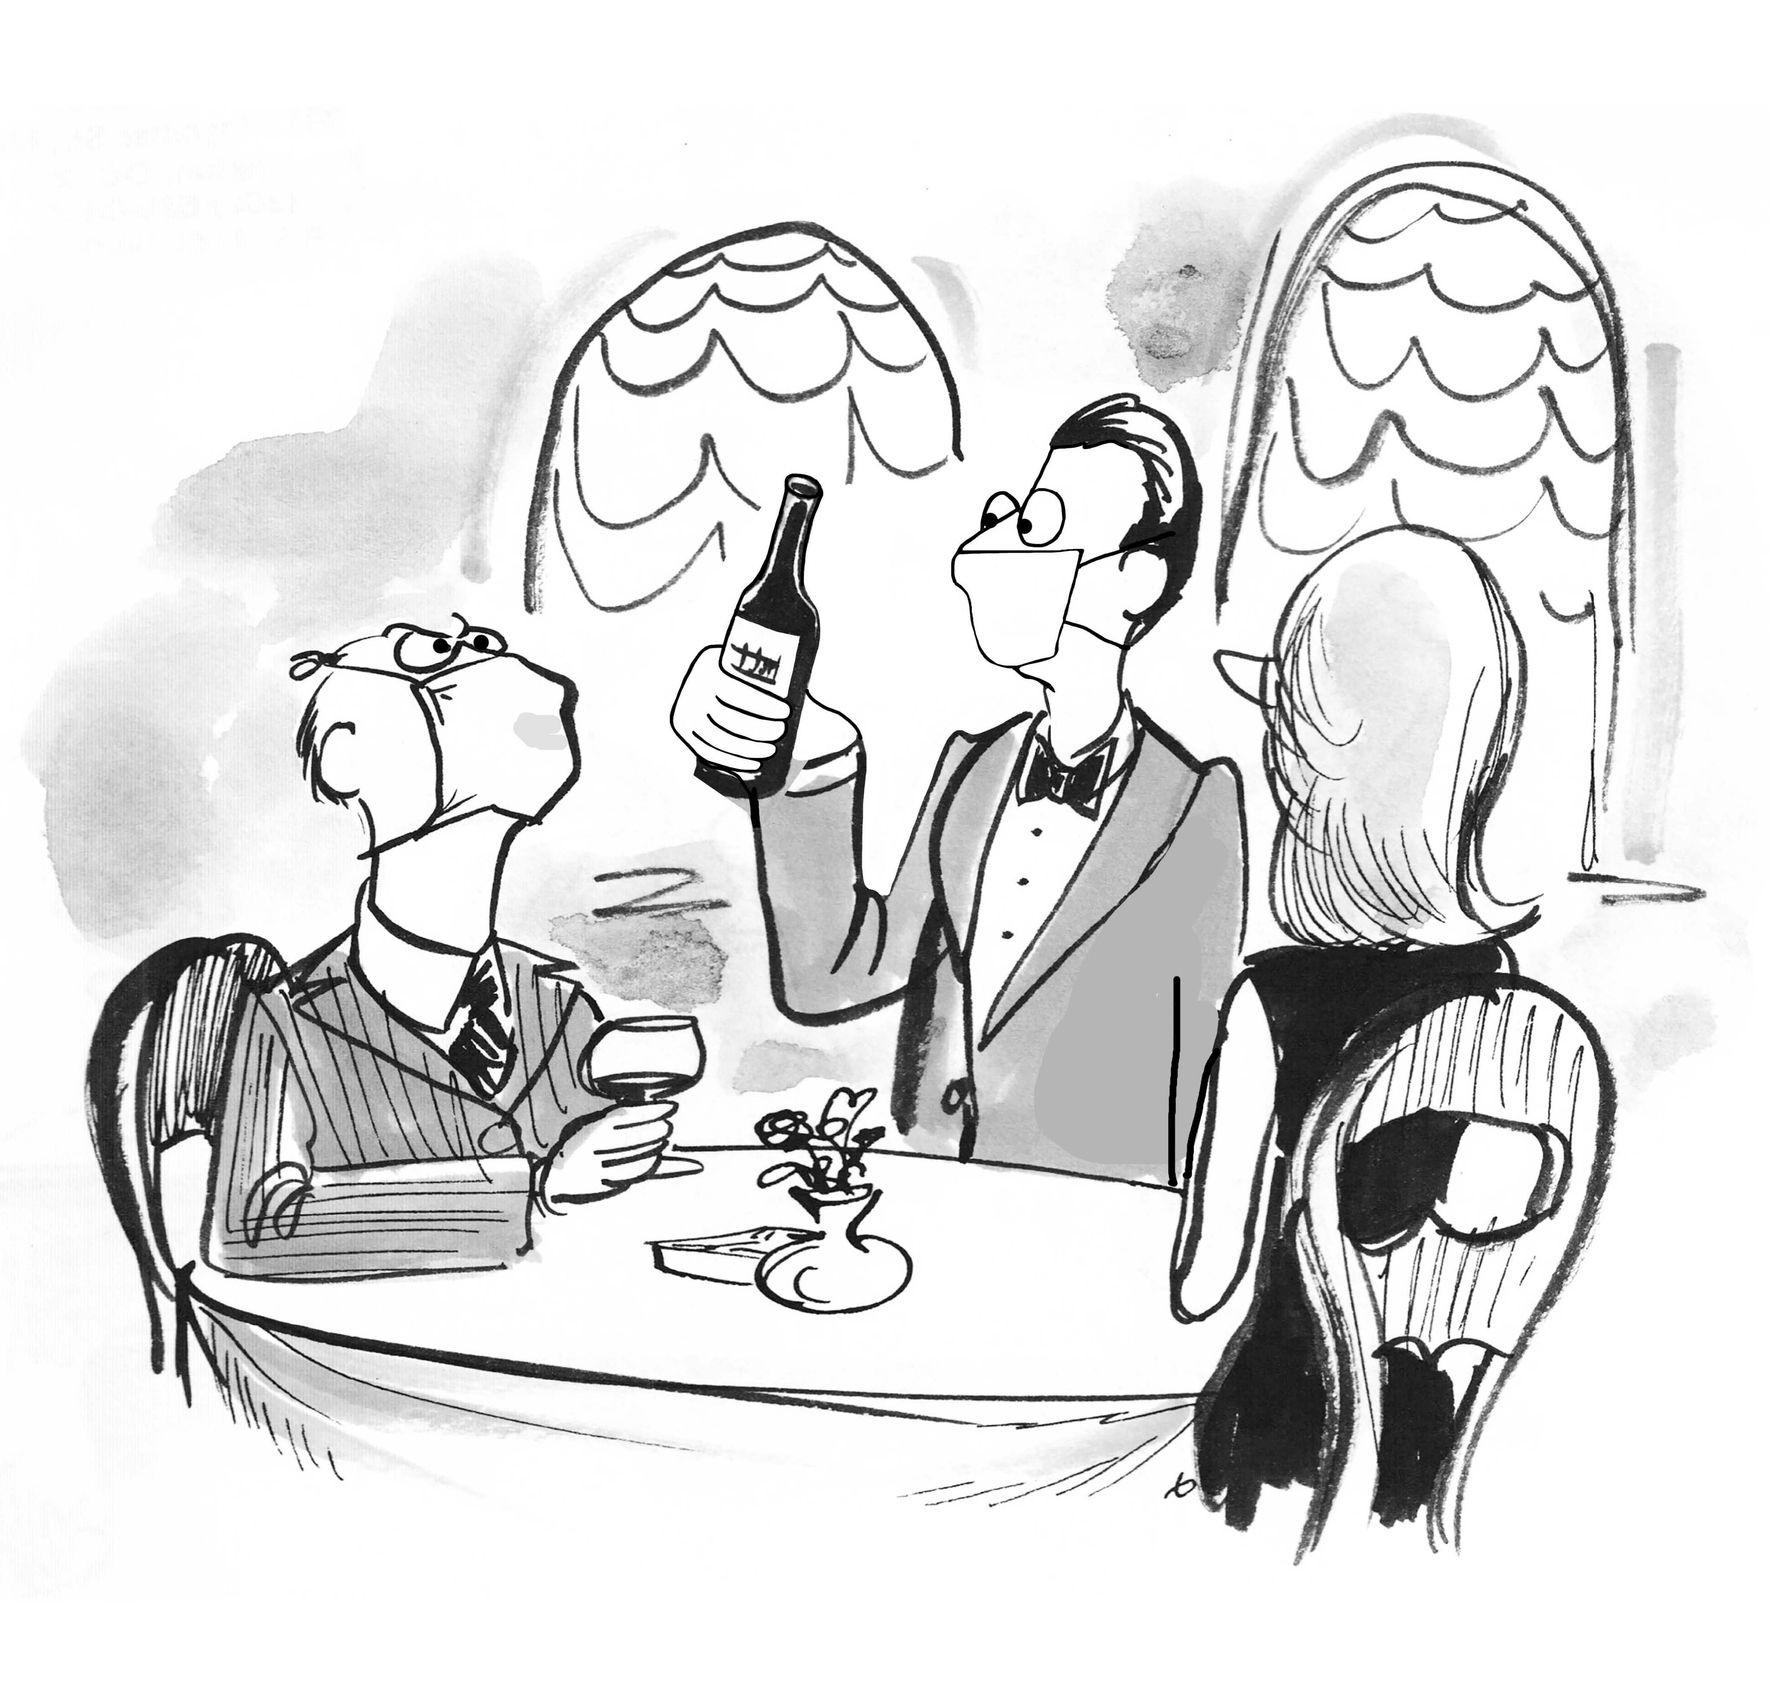 Ein Cartoon, der einen elitären, älteren Mann zeigt, der sich die Mühe macht, dass seine Gesichtsmaske ihn beim Trinken eines guten Weines stört.